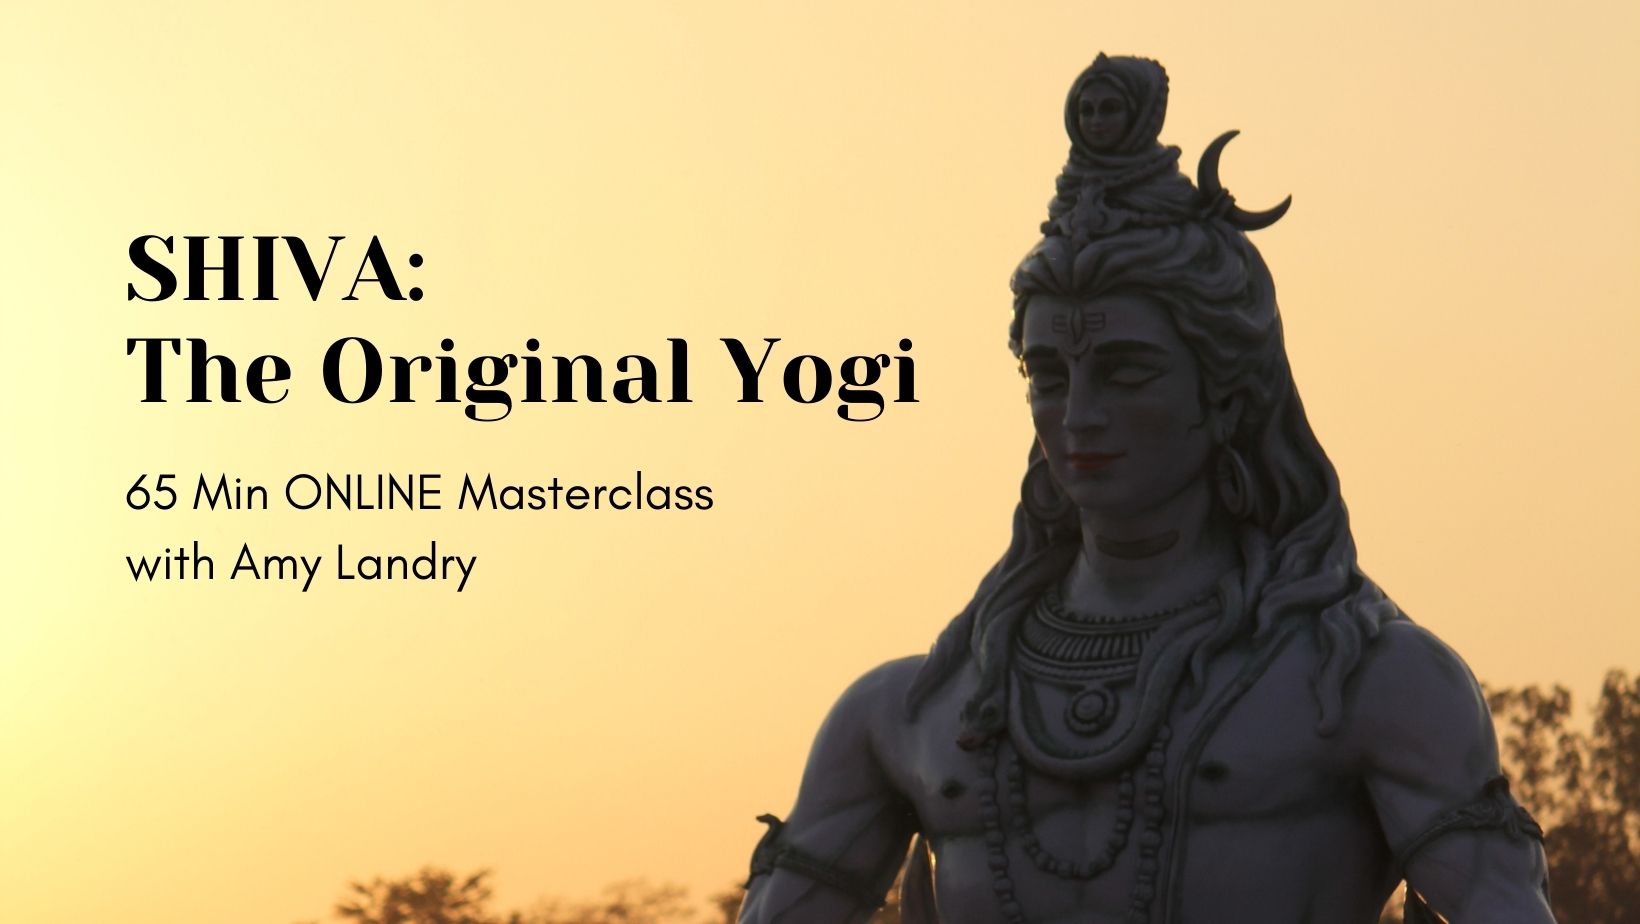 shiva masterclass lord of yoga original yogi amy landry